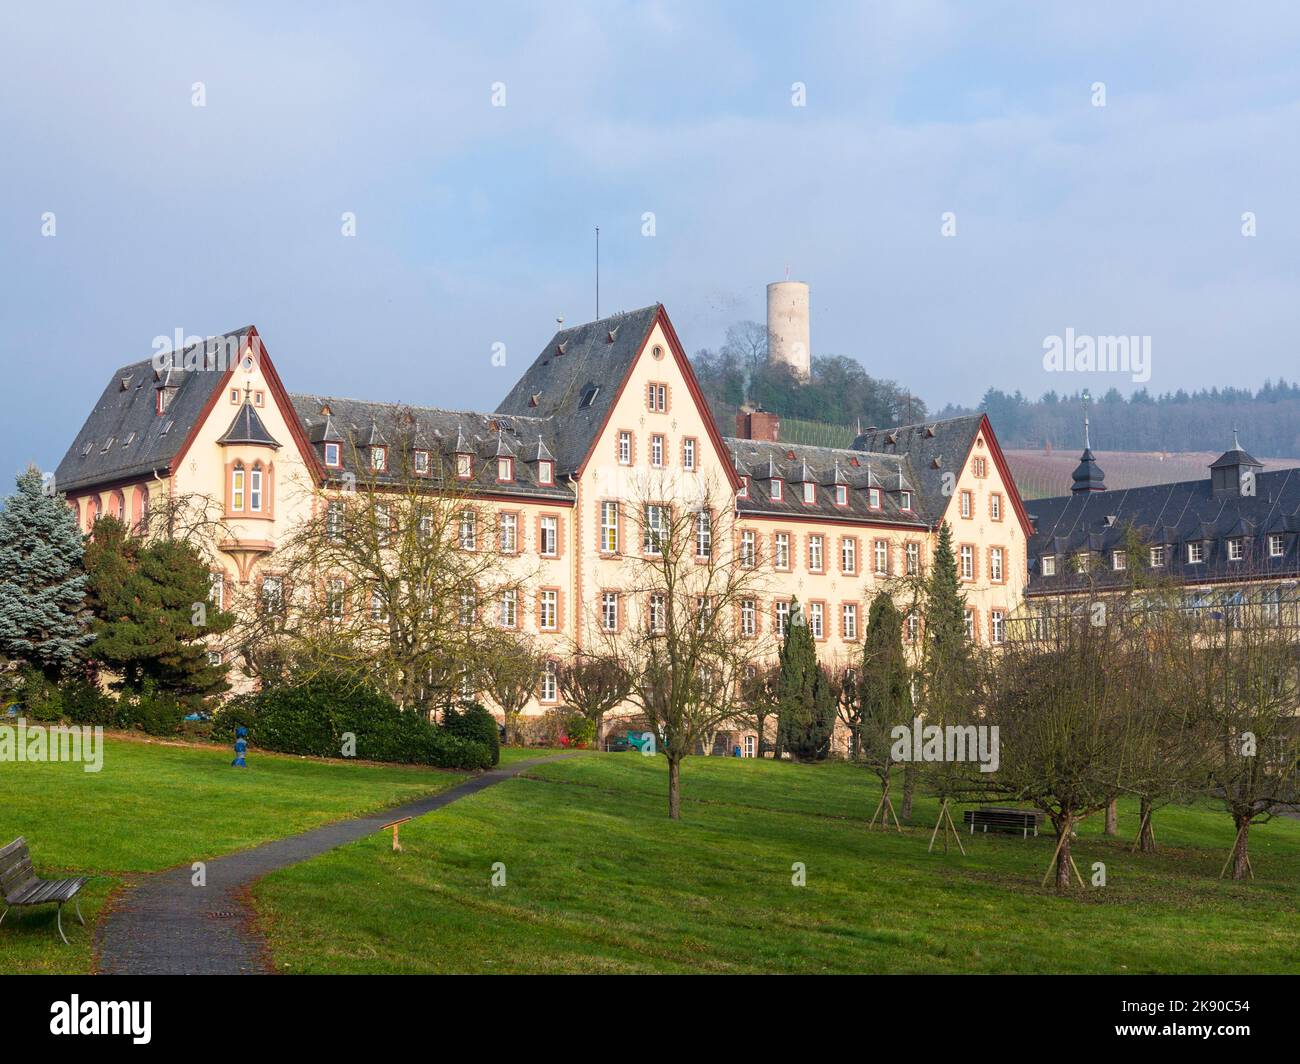 KIEDRICH, DEUTSCHLAND - 15. DEZEMBER 2015: Altes Krankenhaus in Kiedrich, Deutschland in der Morgensonne. Die Klinik wurde 1884 vom Architekten Hehl erbaut. Stockfoto